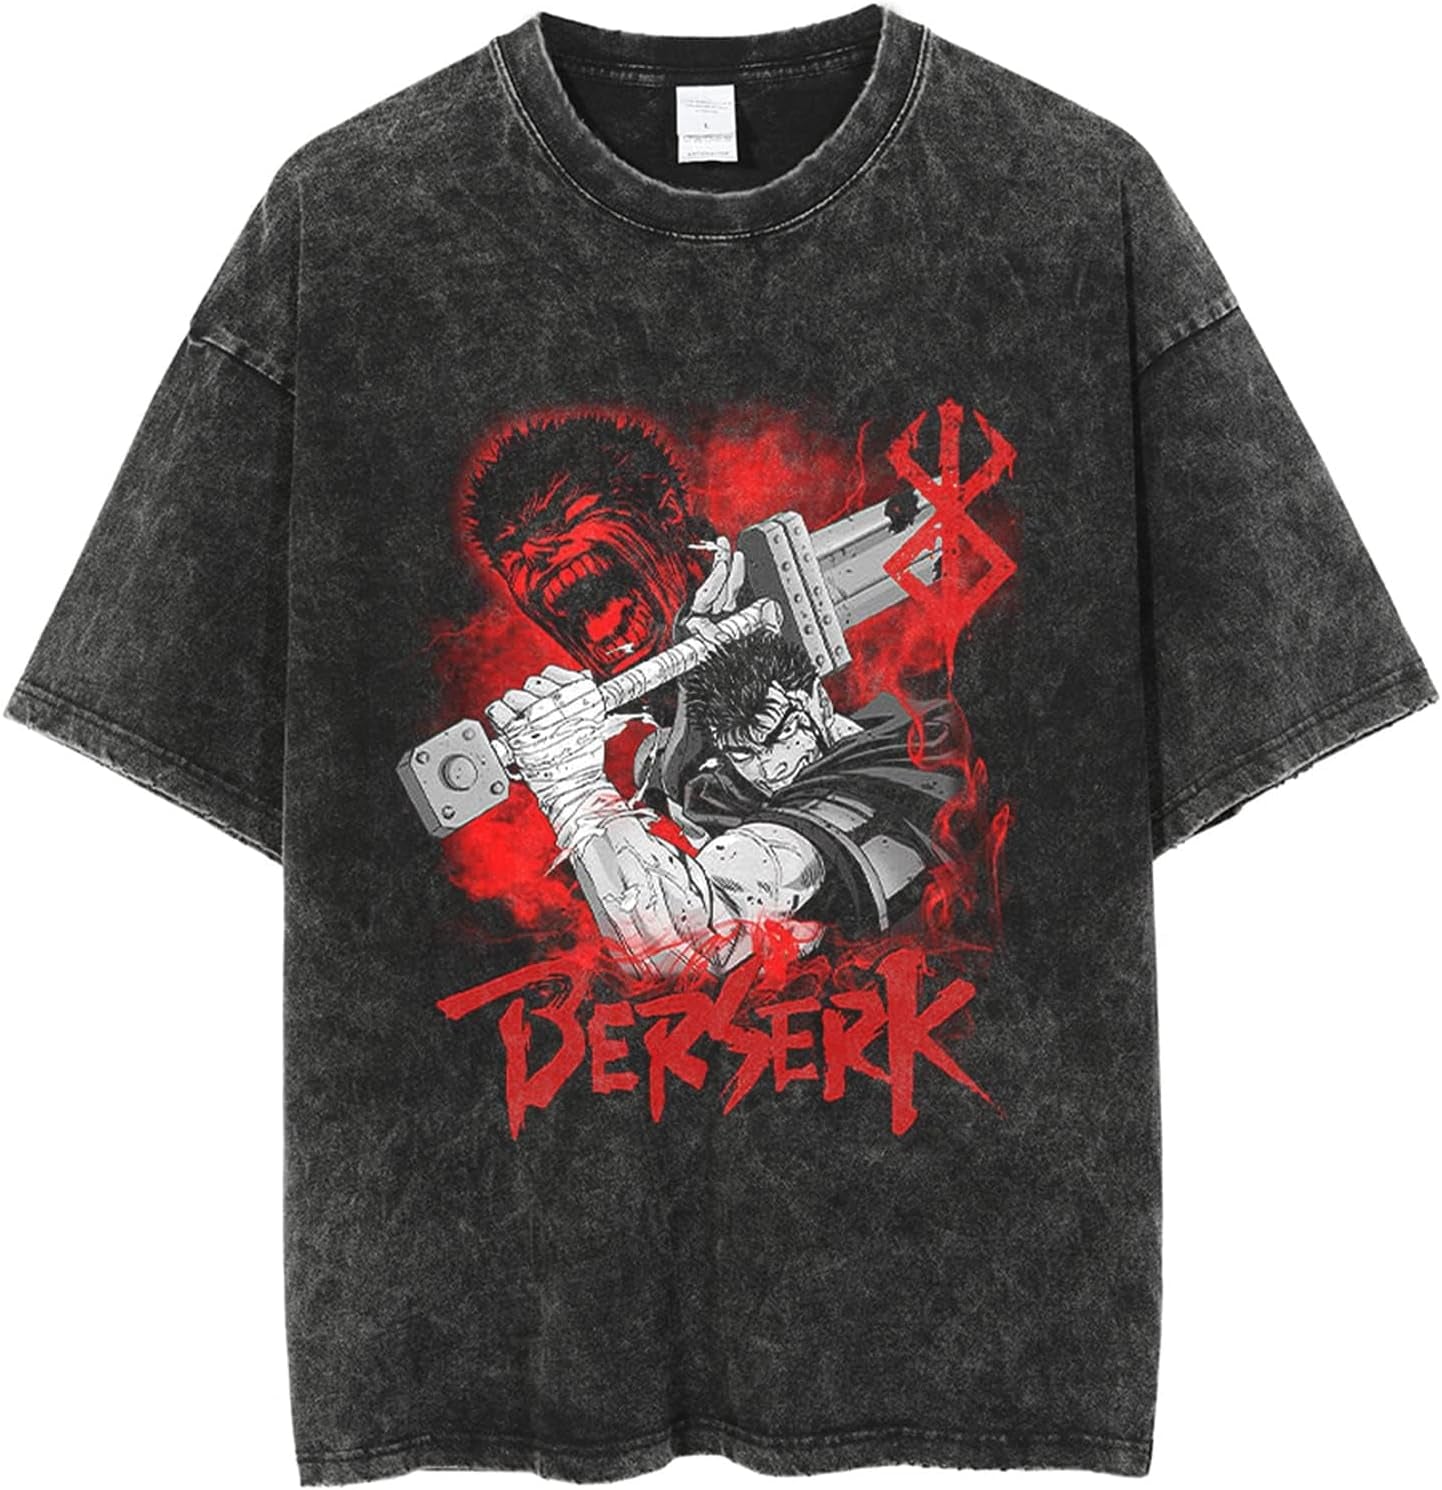 Y2K Vintage Berserk T-Shirts